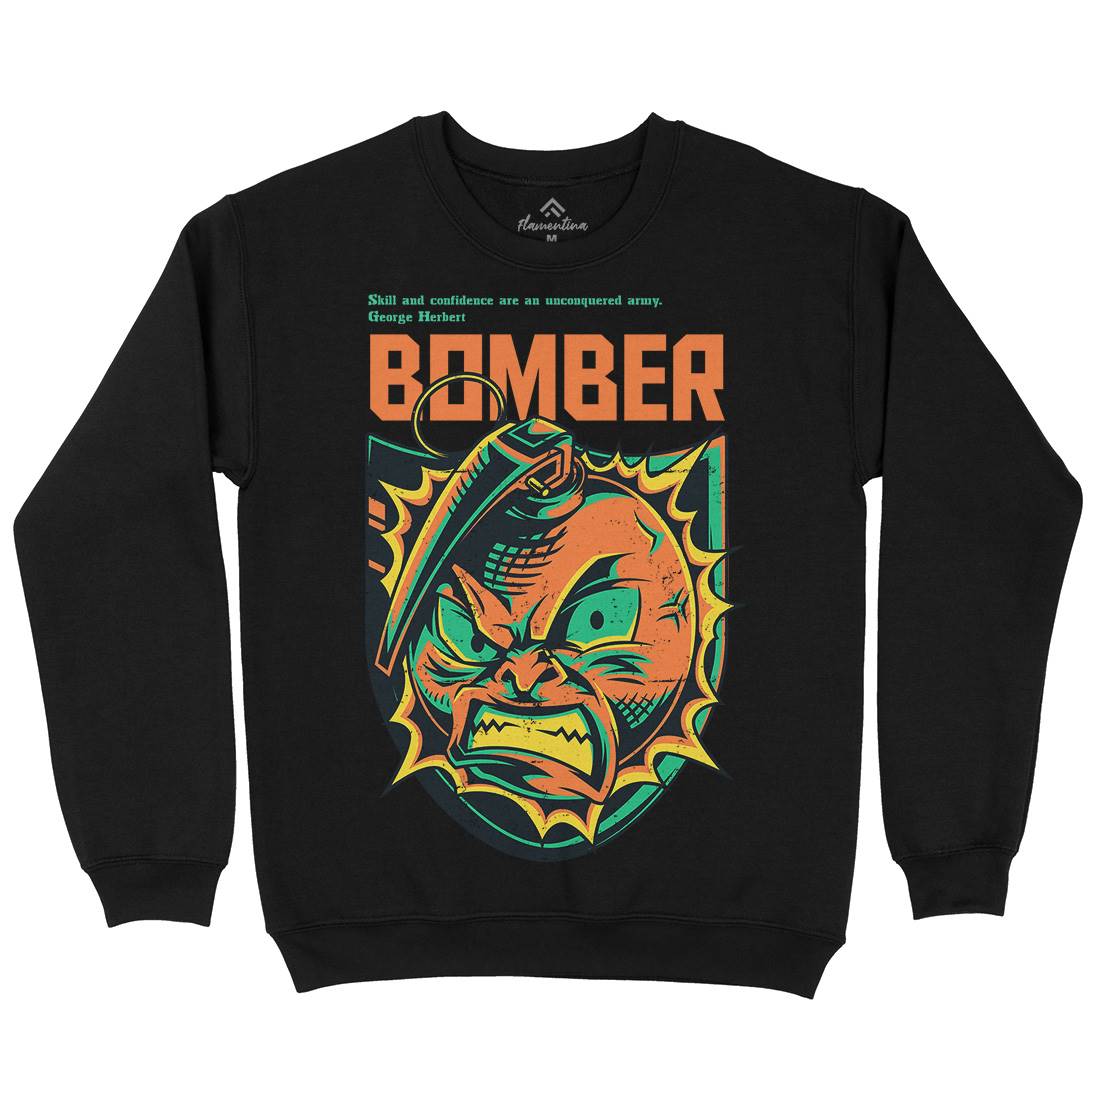 Bomber Grenade Kids Crew Neck Sweatshirt Army D846